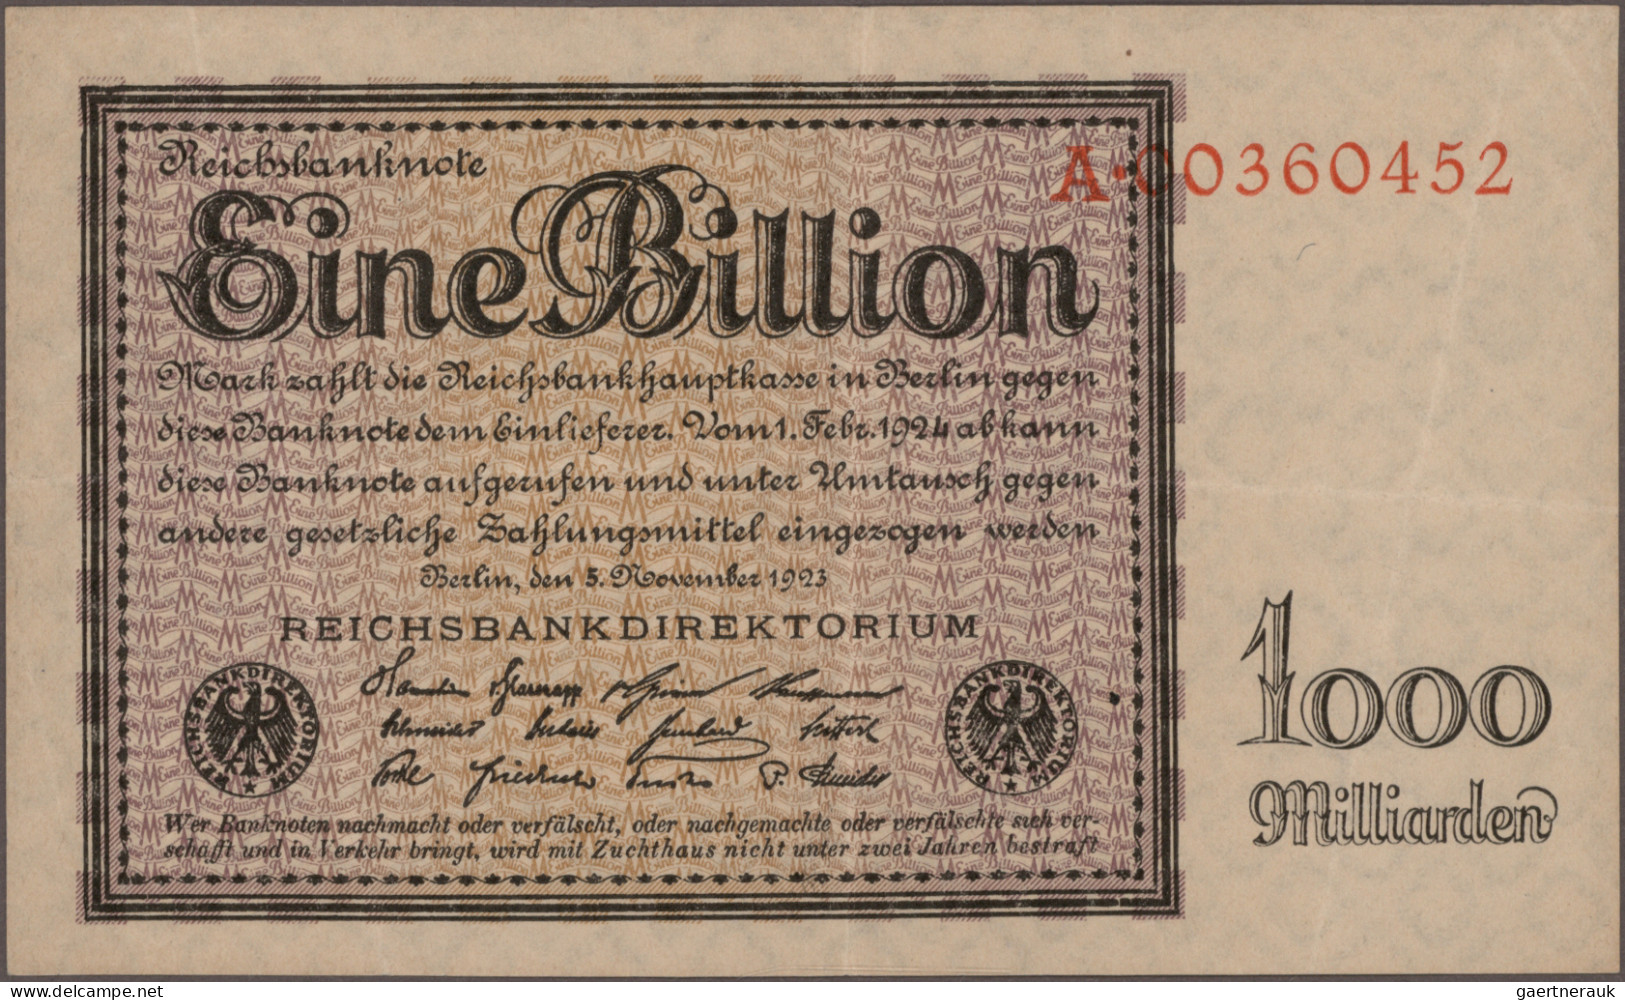 Deutschland - Deutsches Reich bis 1945: Riesiges Konvolut mit 669 Banknoten der